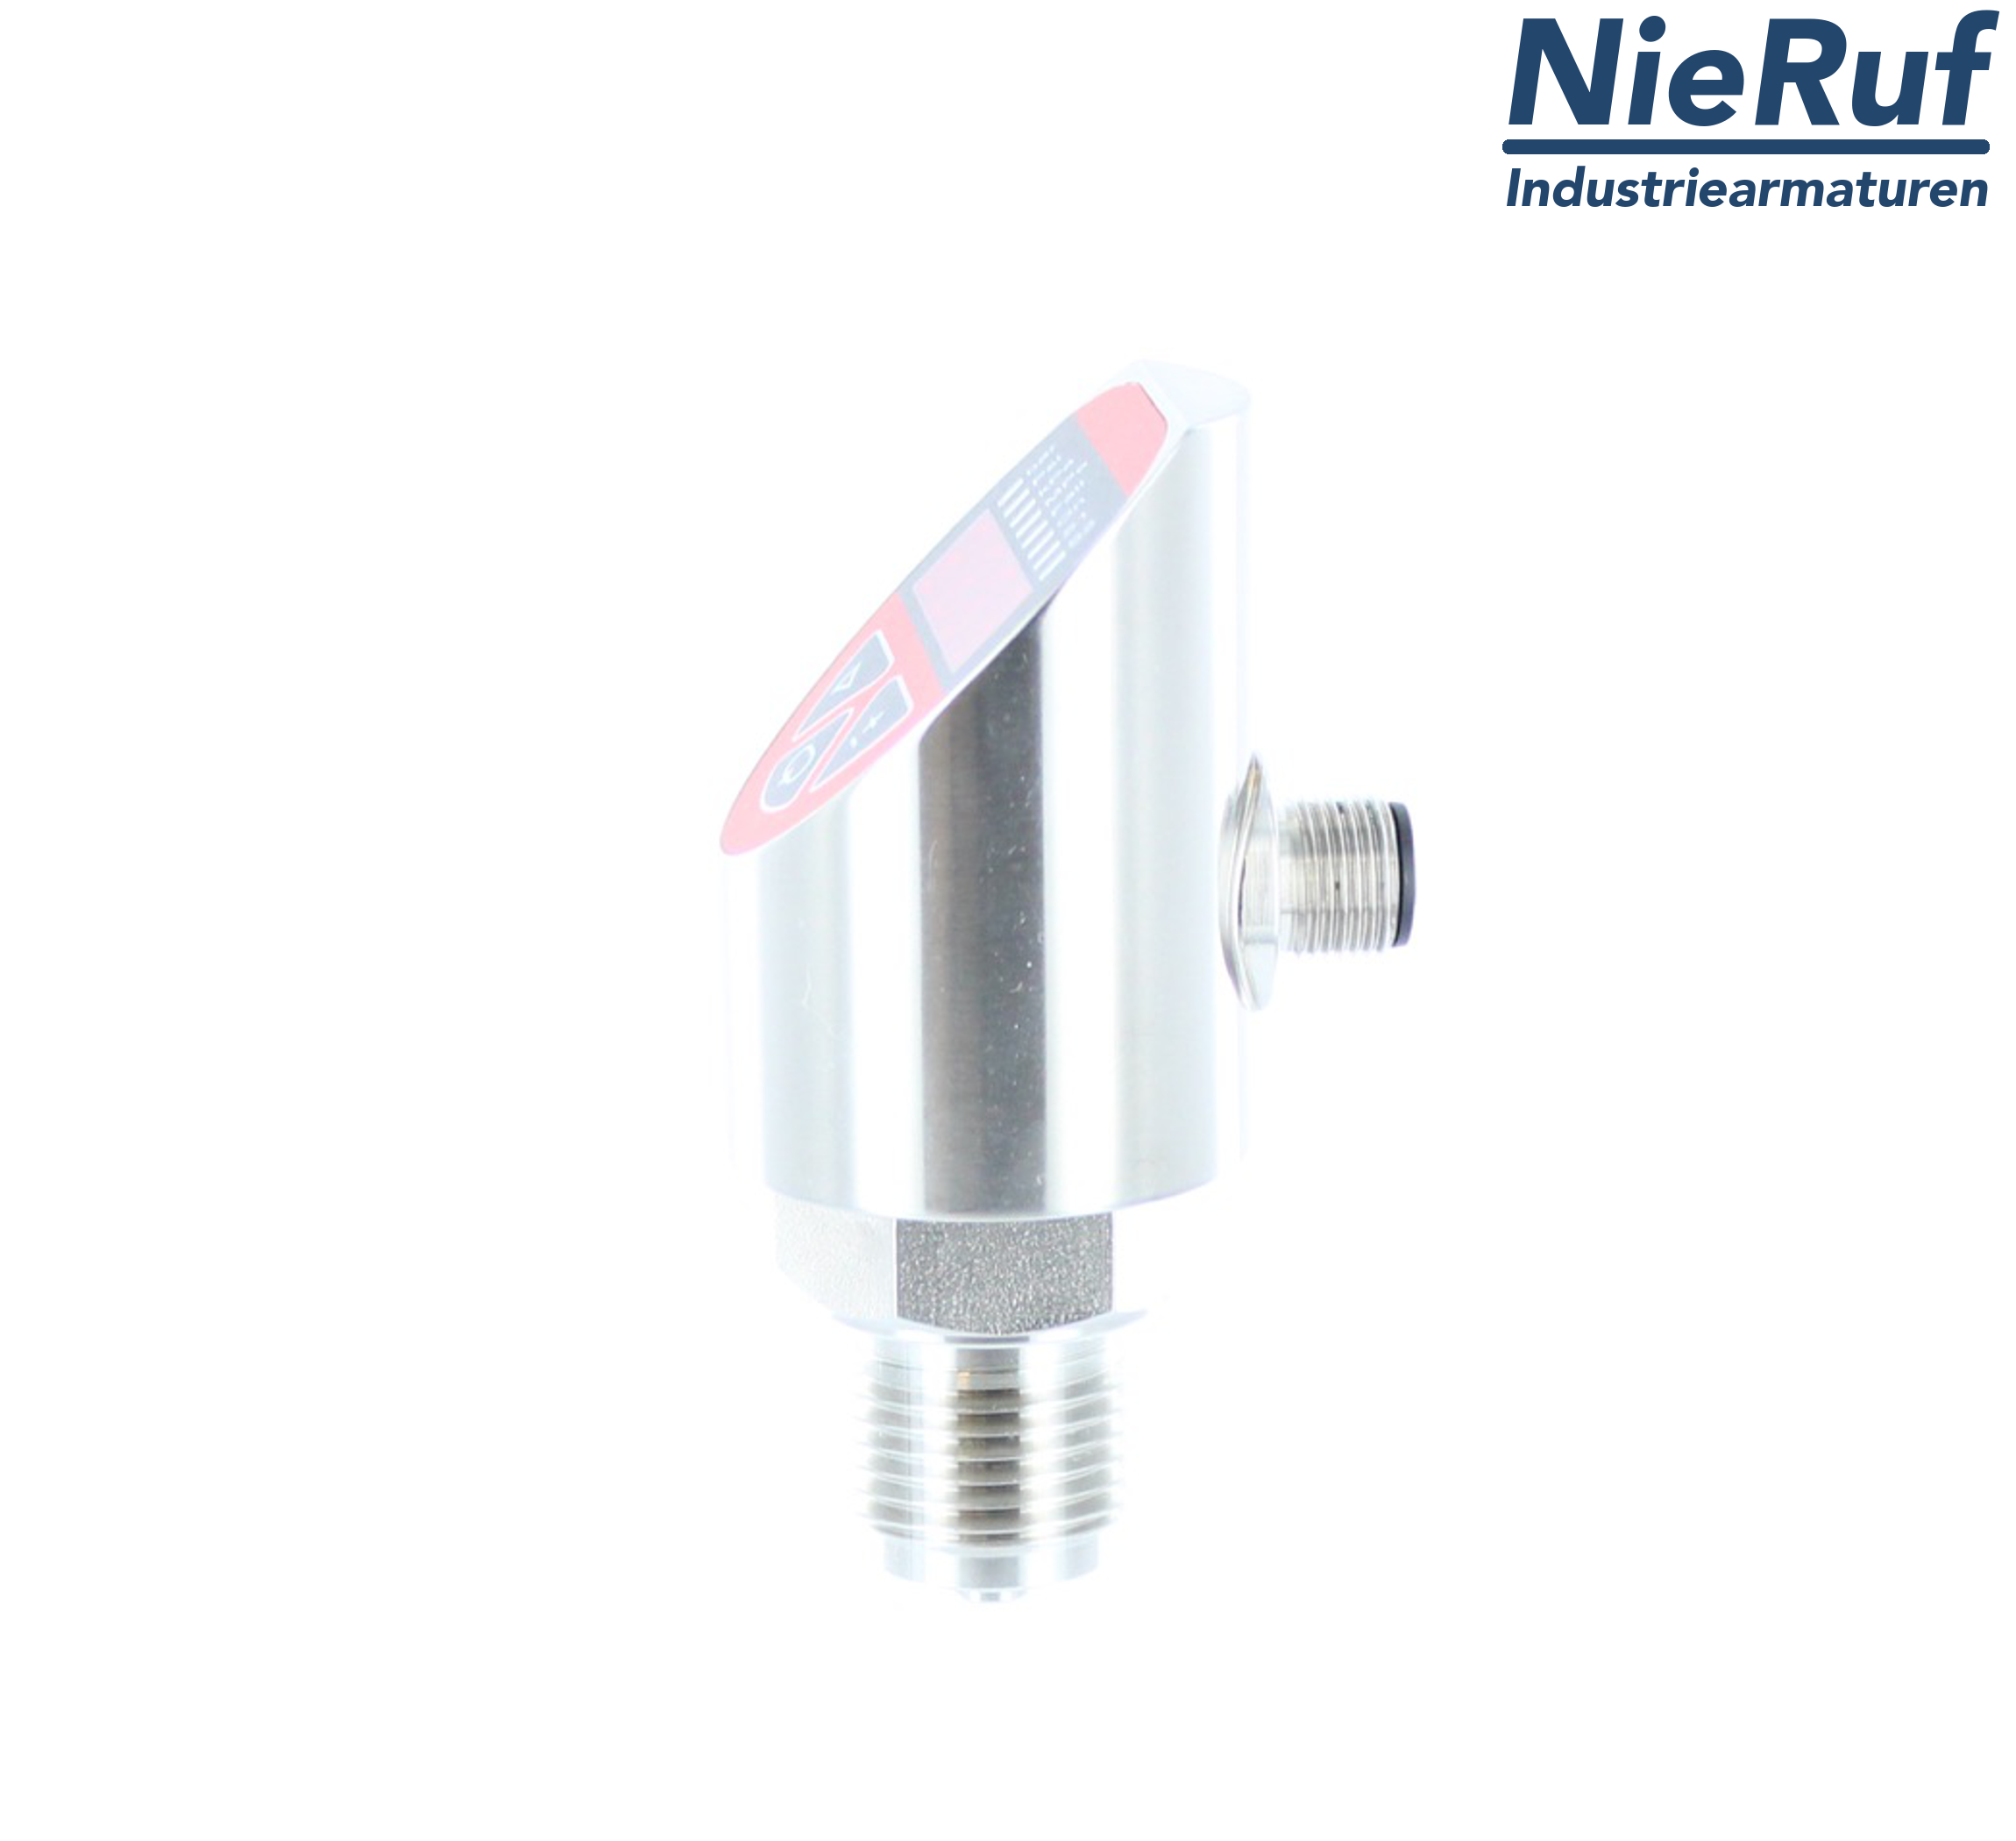 digital pressure sensor G 1/2" B IB 4-wire: 1xPNP, 1x4 - 20mA, Desina FPM 0,0 - 400,0 bar